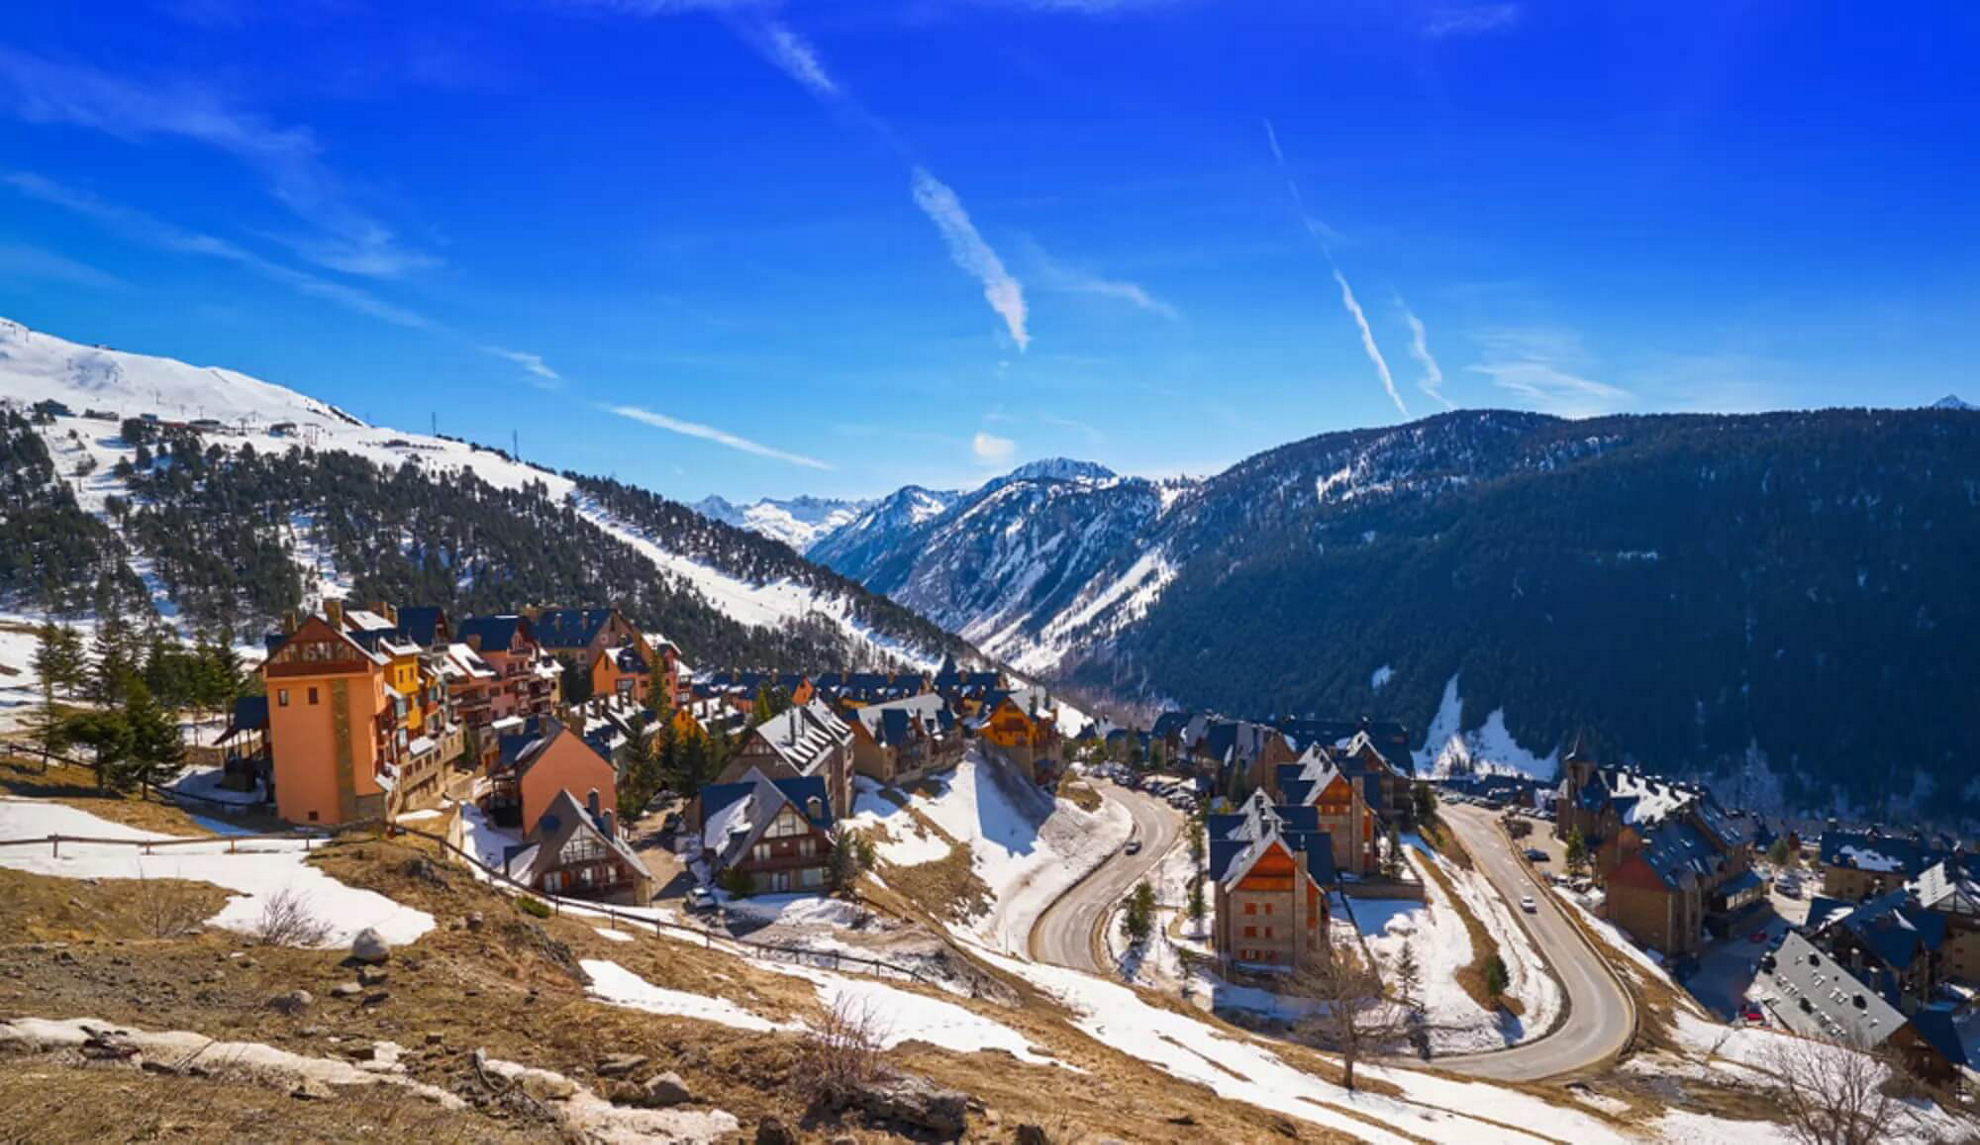 Skigebiete Spanien: Sicht auf den Skiort Baqueira Beret.